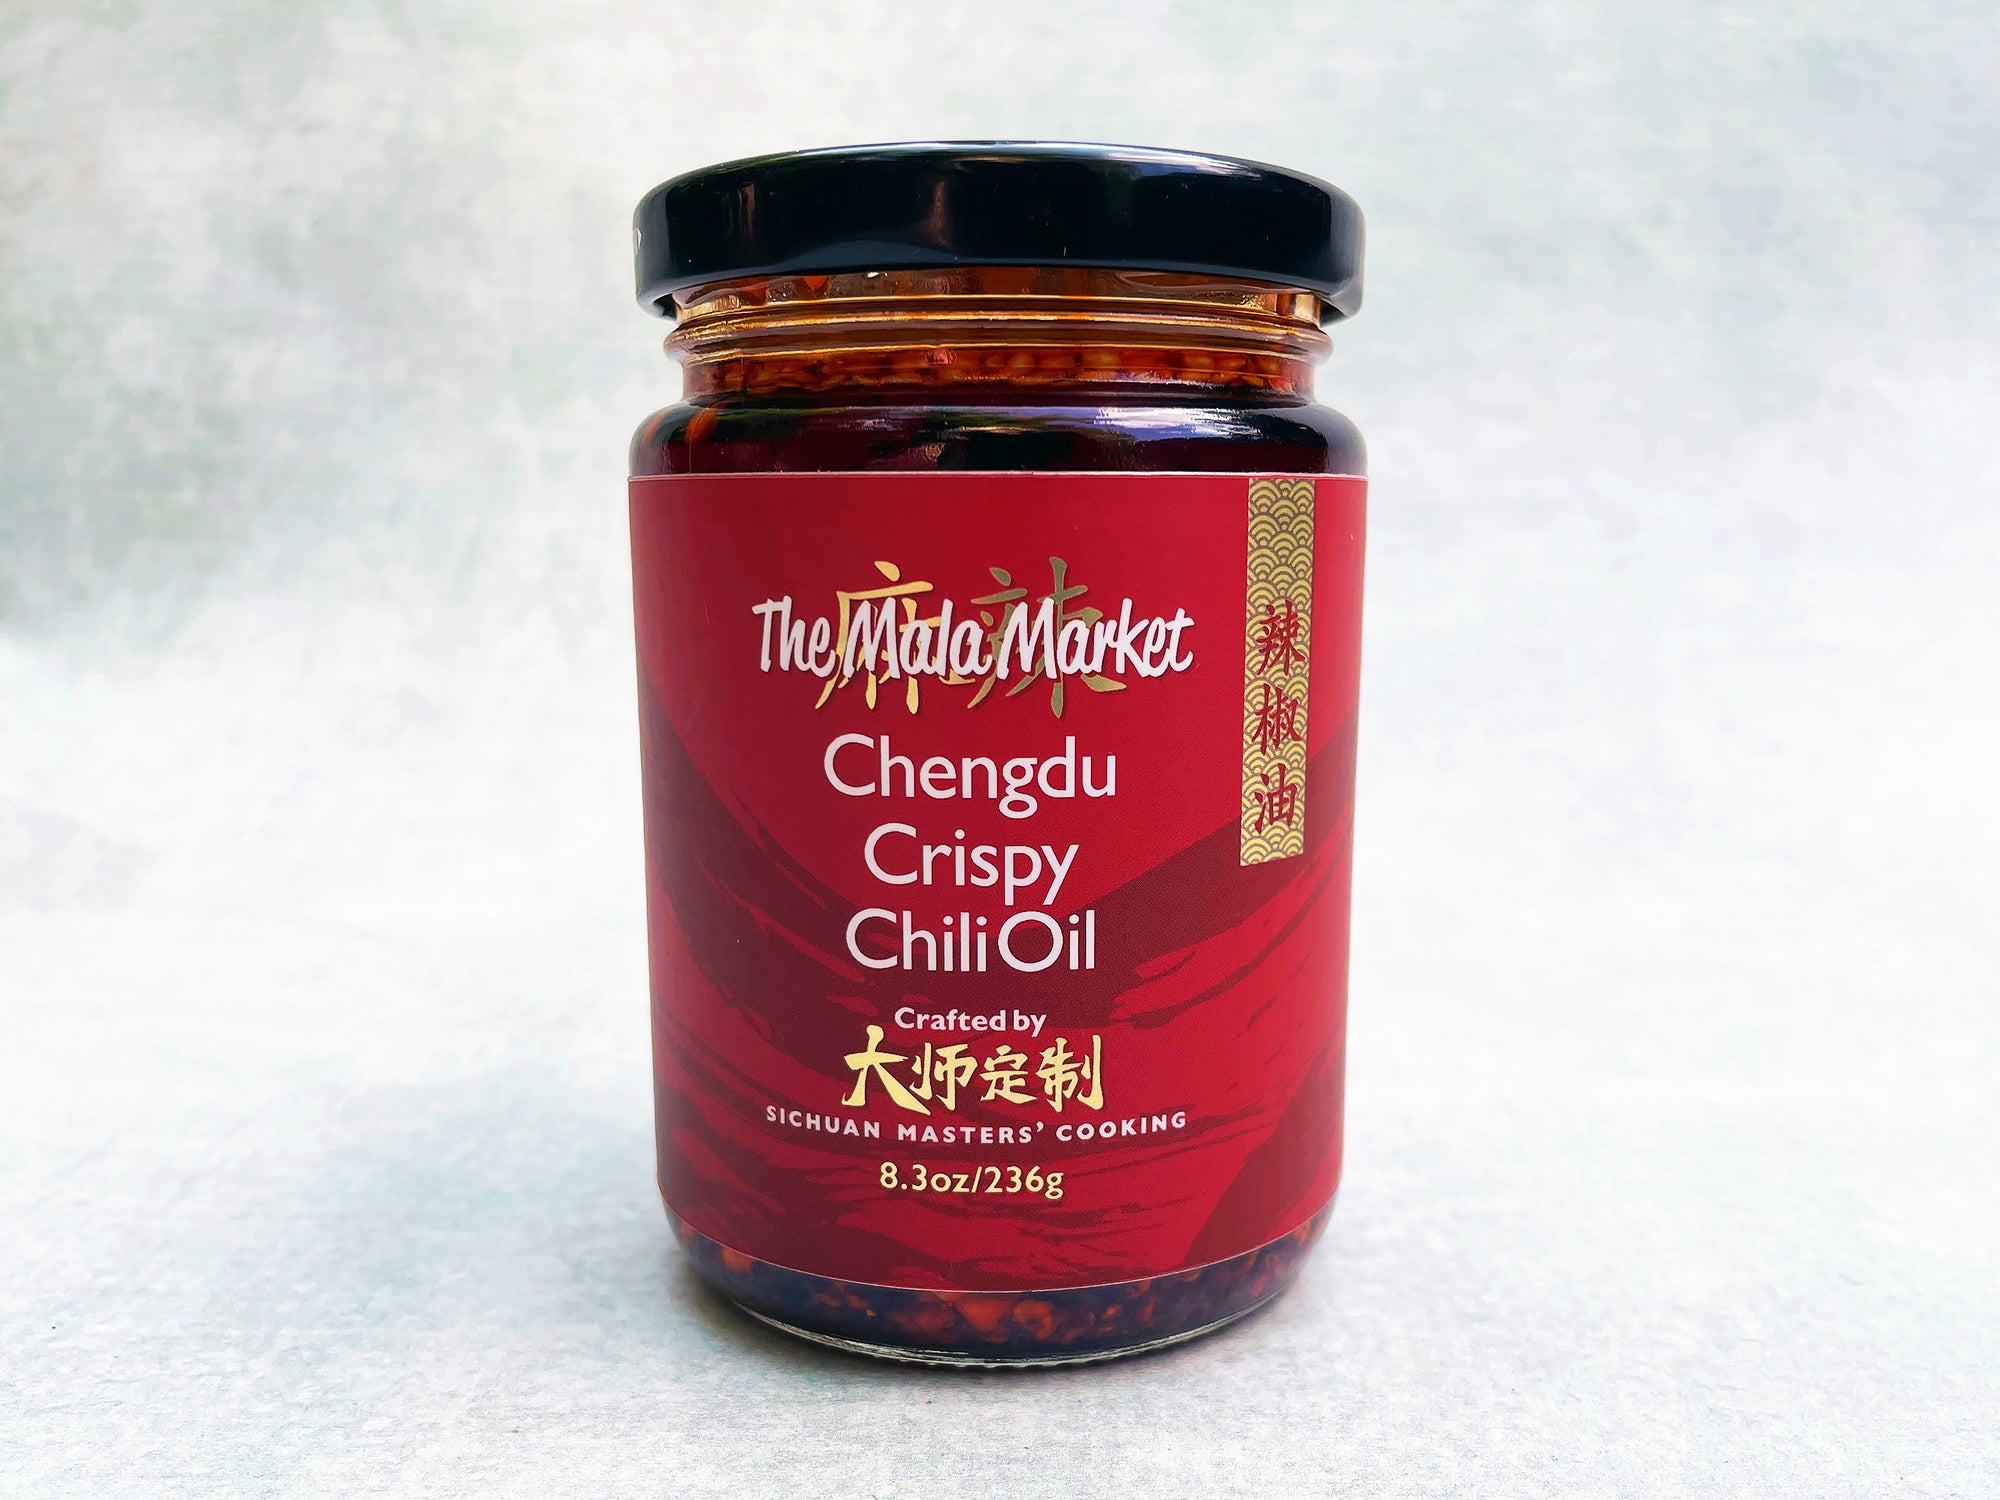 Chengdu Crispy Chili Oil